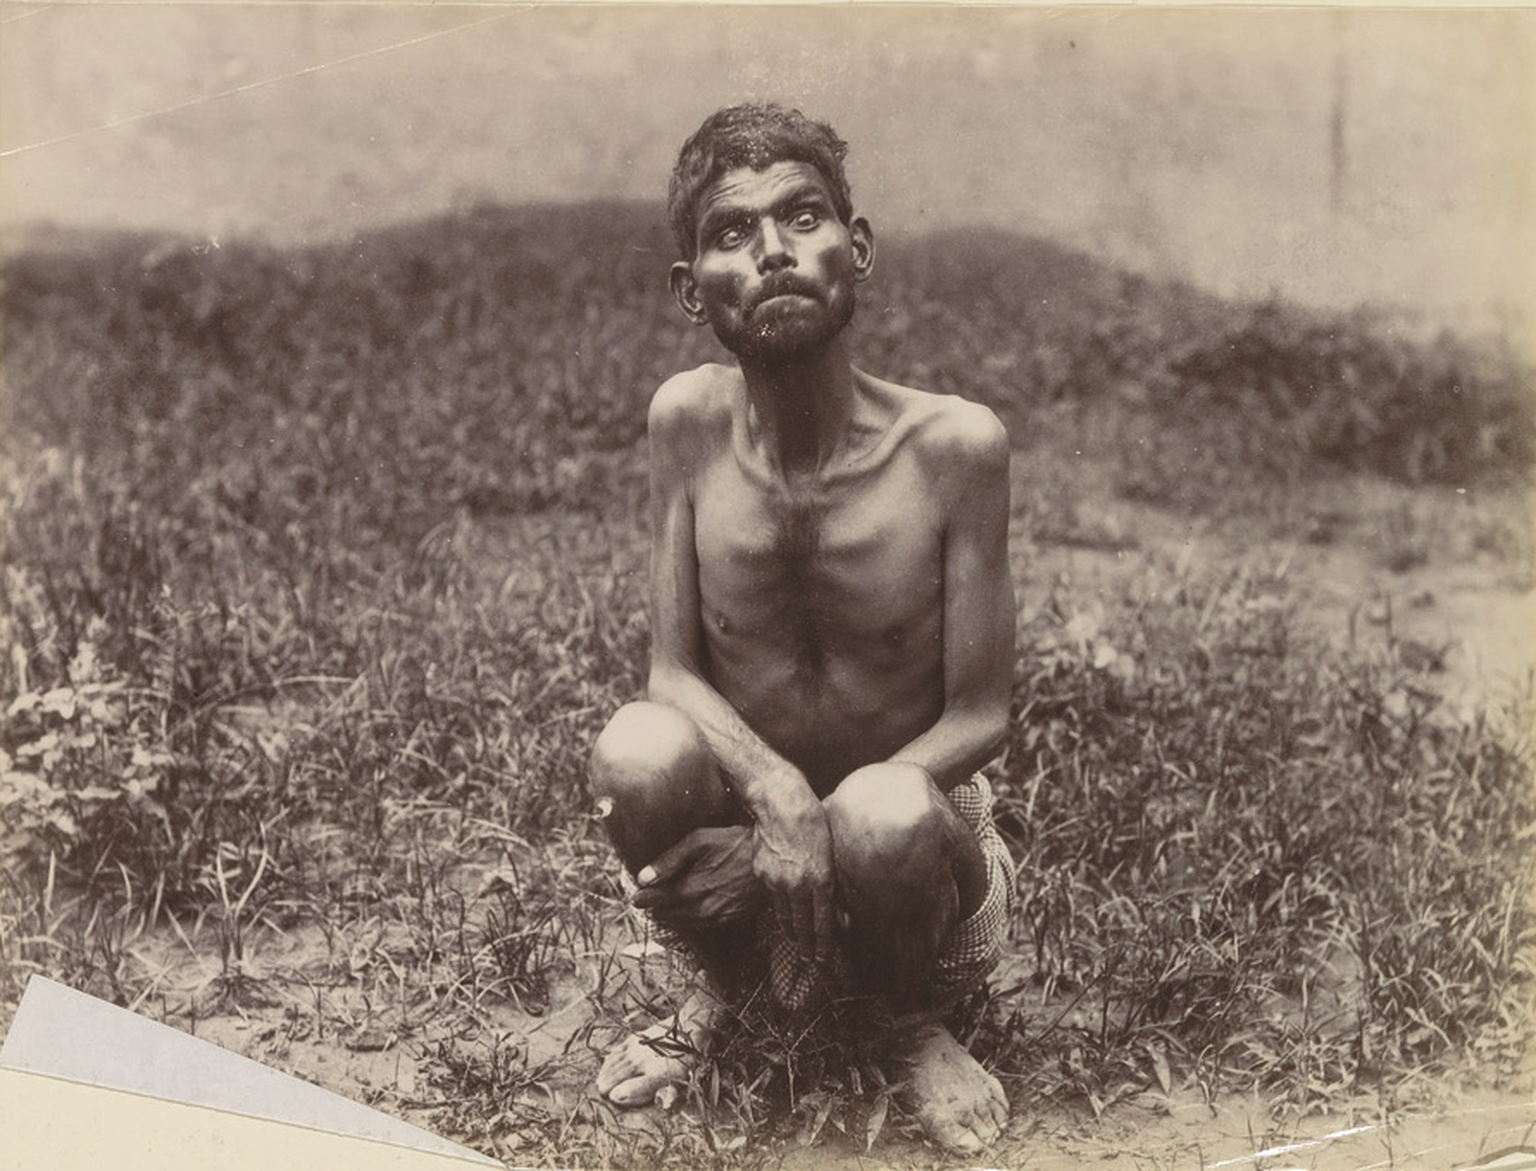 Dina Sanichar as a young man, c. 1889-1894
https://en.wikipedia.org/wiki/Dina_Sanichar#/media/File:Sanichar-cropped.png